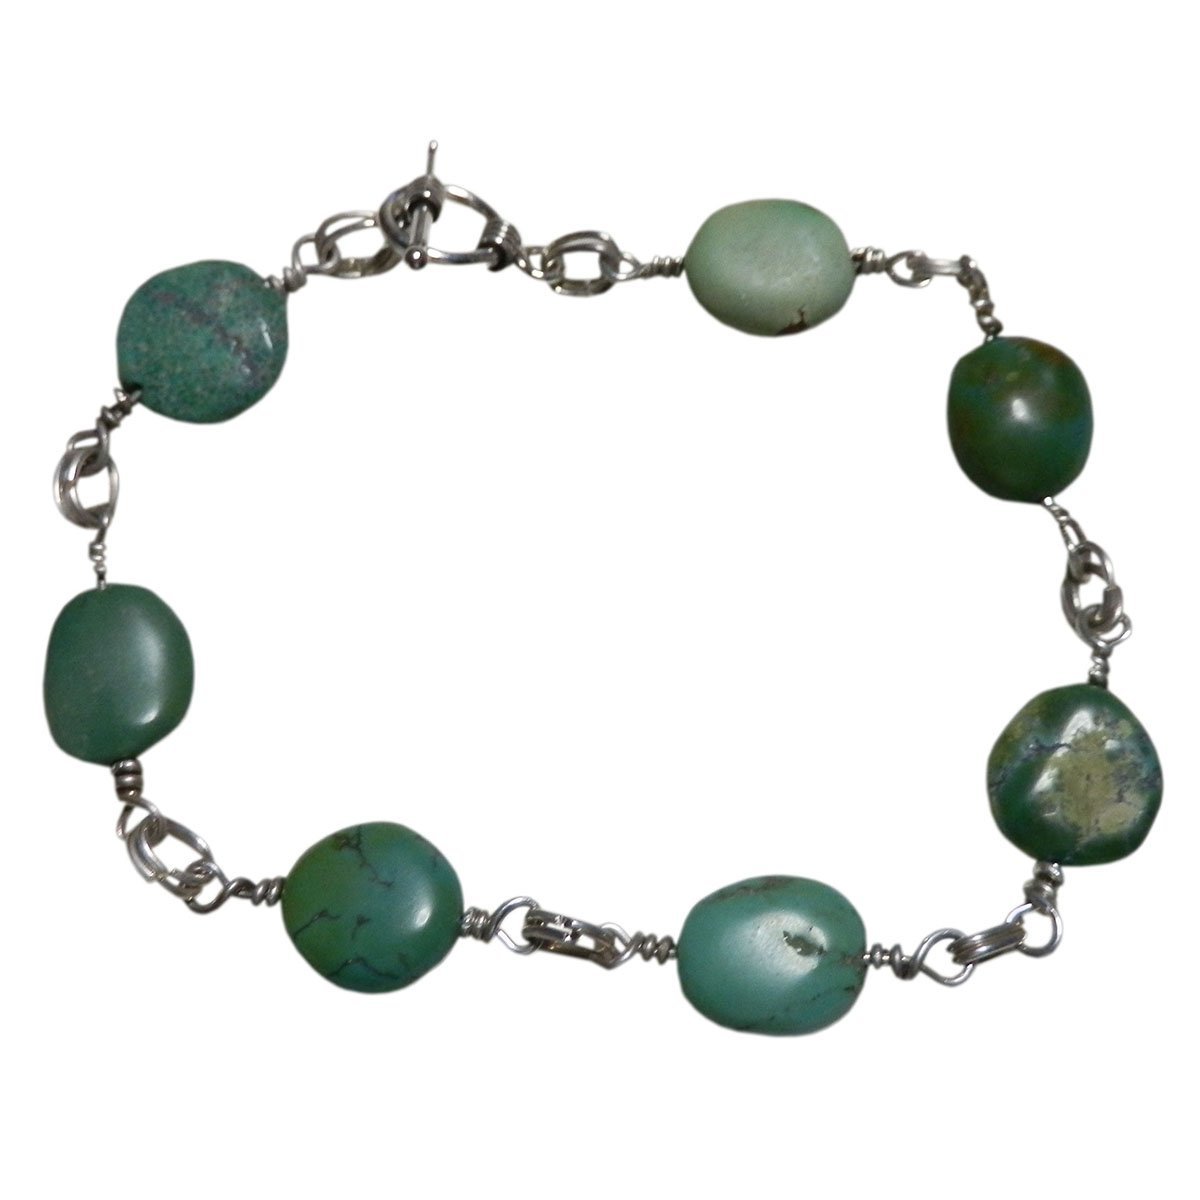 ■☆手工饰品绿松石手链(OTB-6), 手镯, 有色宝石, 绿松石